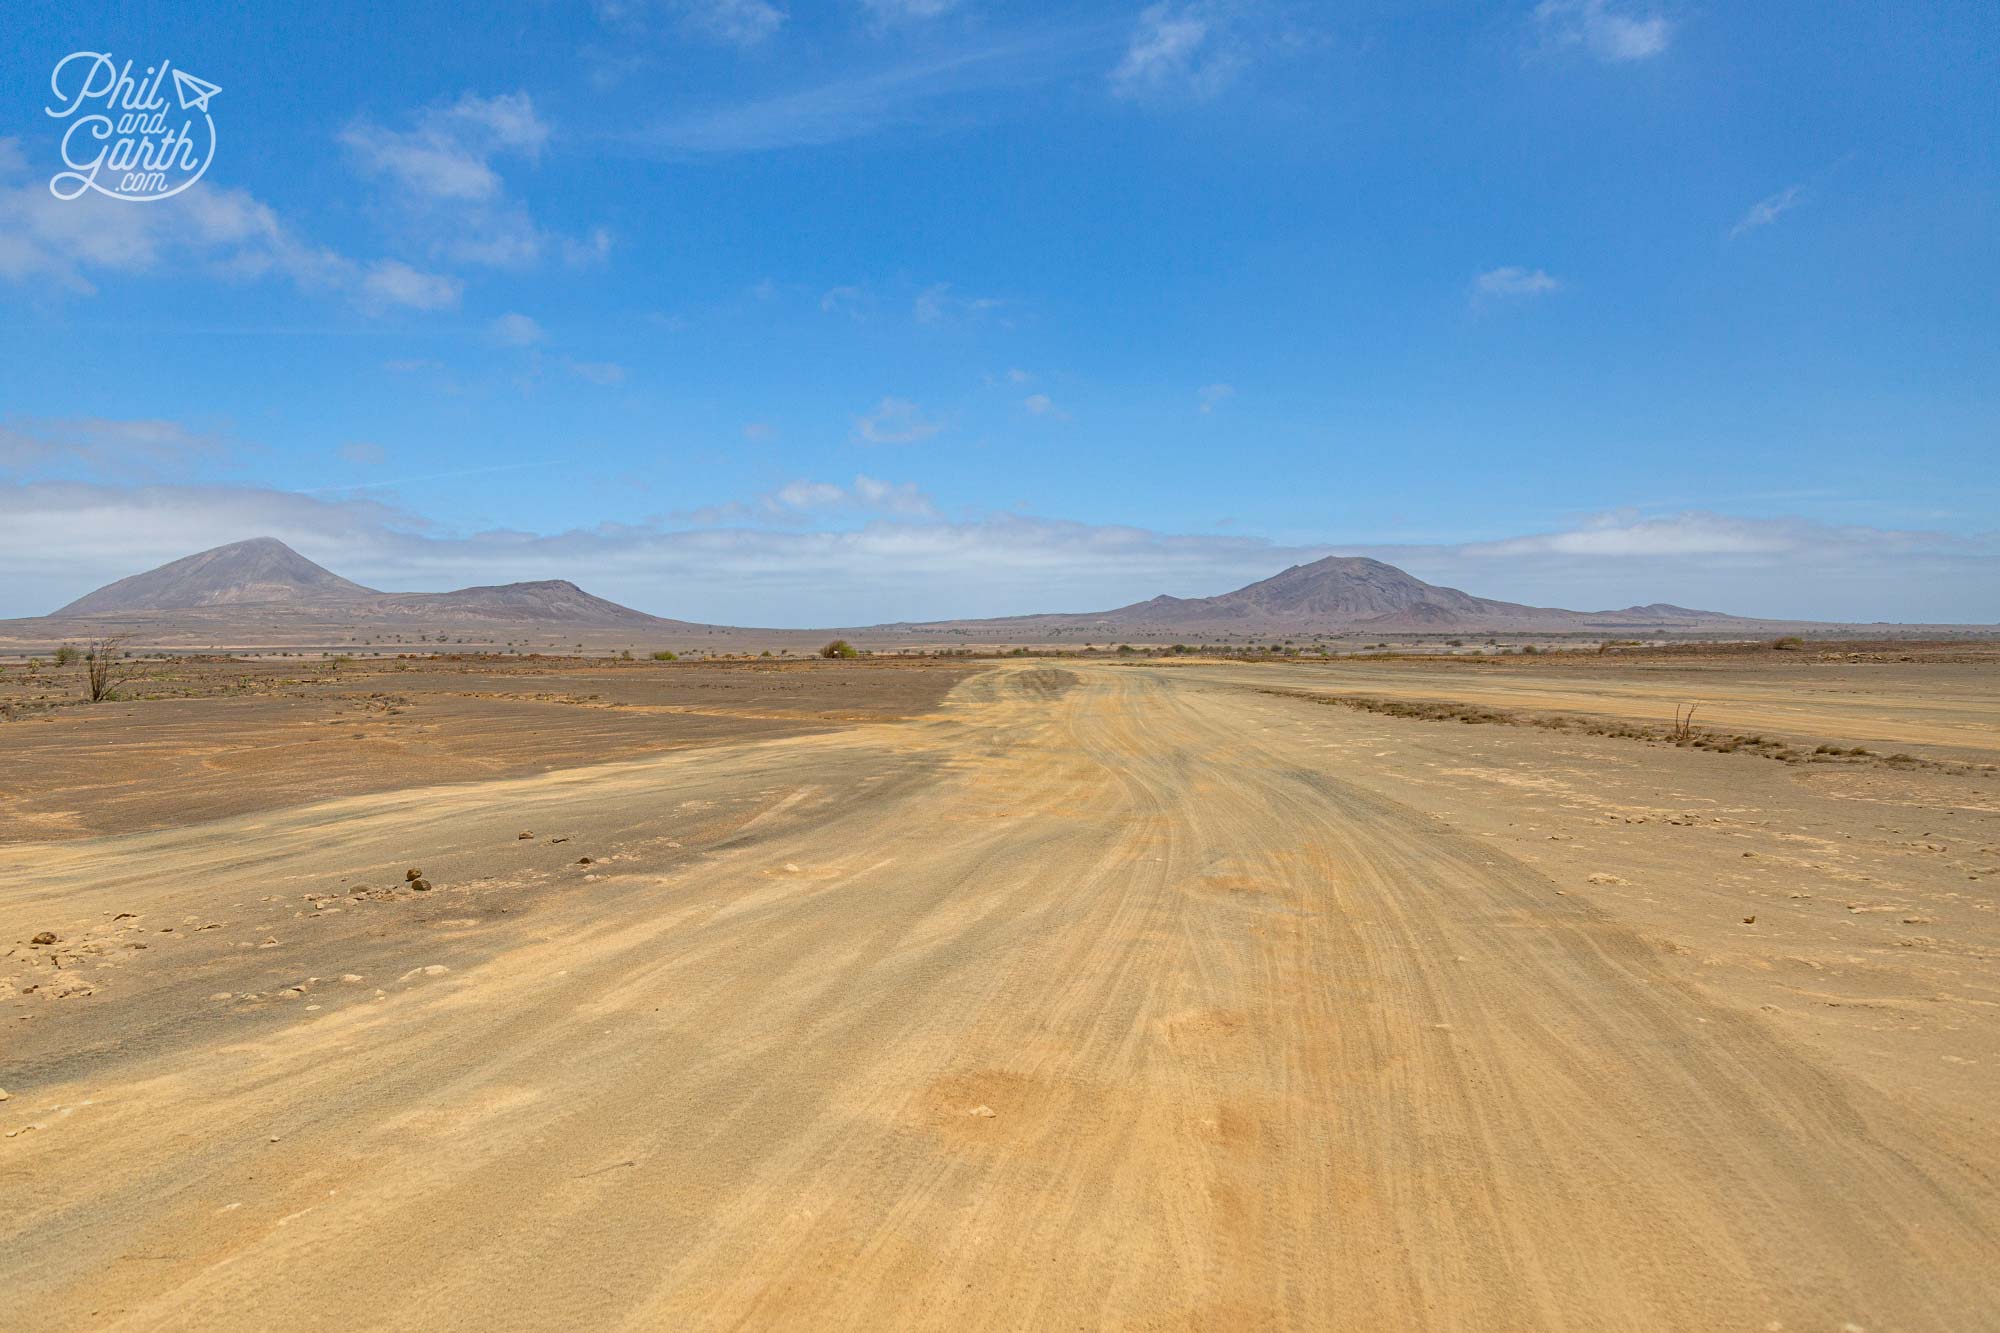 The vast desert landscape of Terra Boa